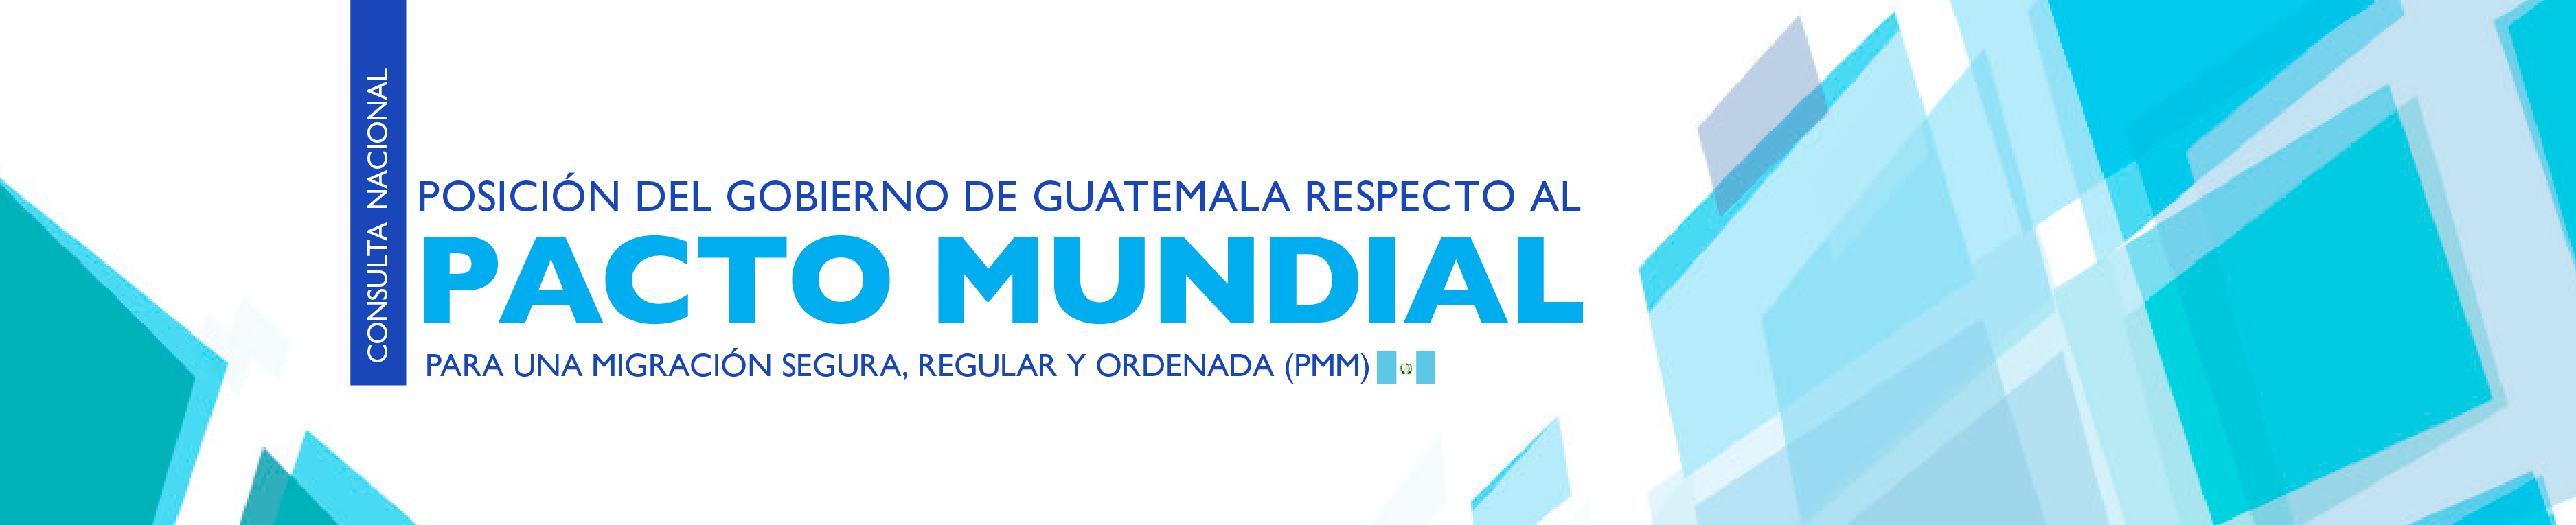 Posición del Gobierno de Guatemala respecto al Pacto Mundial para una migración segura, ordenada y regular (PMM)